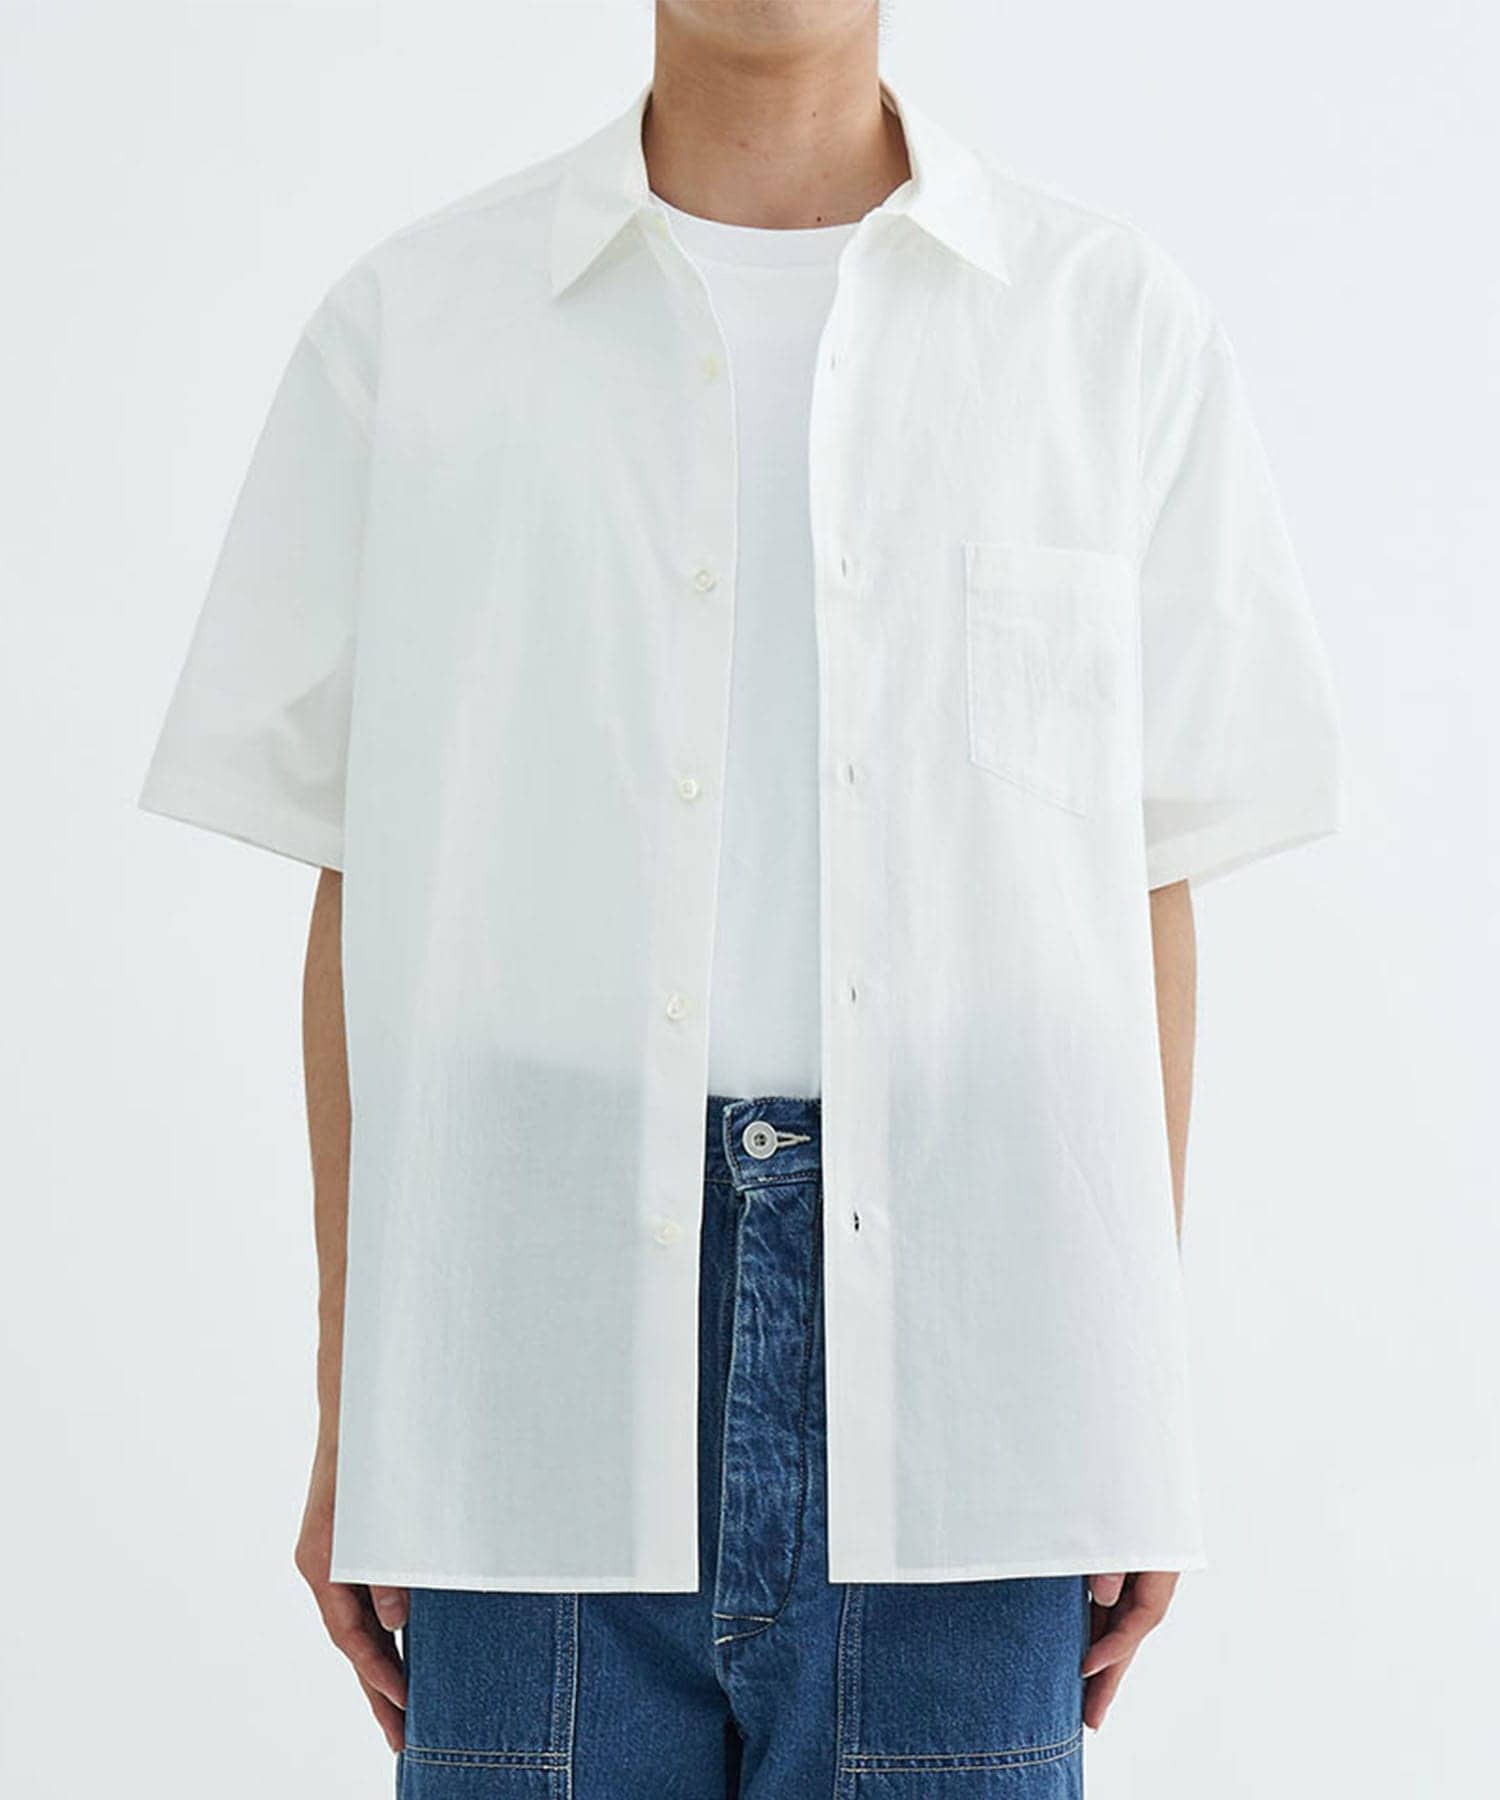 着用一回の備品です早い方に売ります❗️uru tokyo シャツ - シャツ